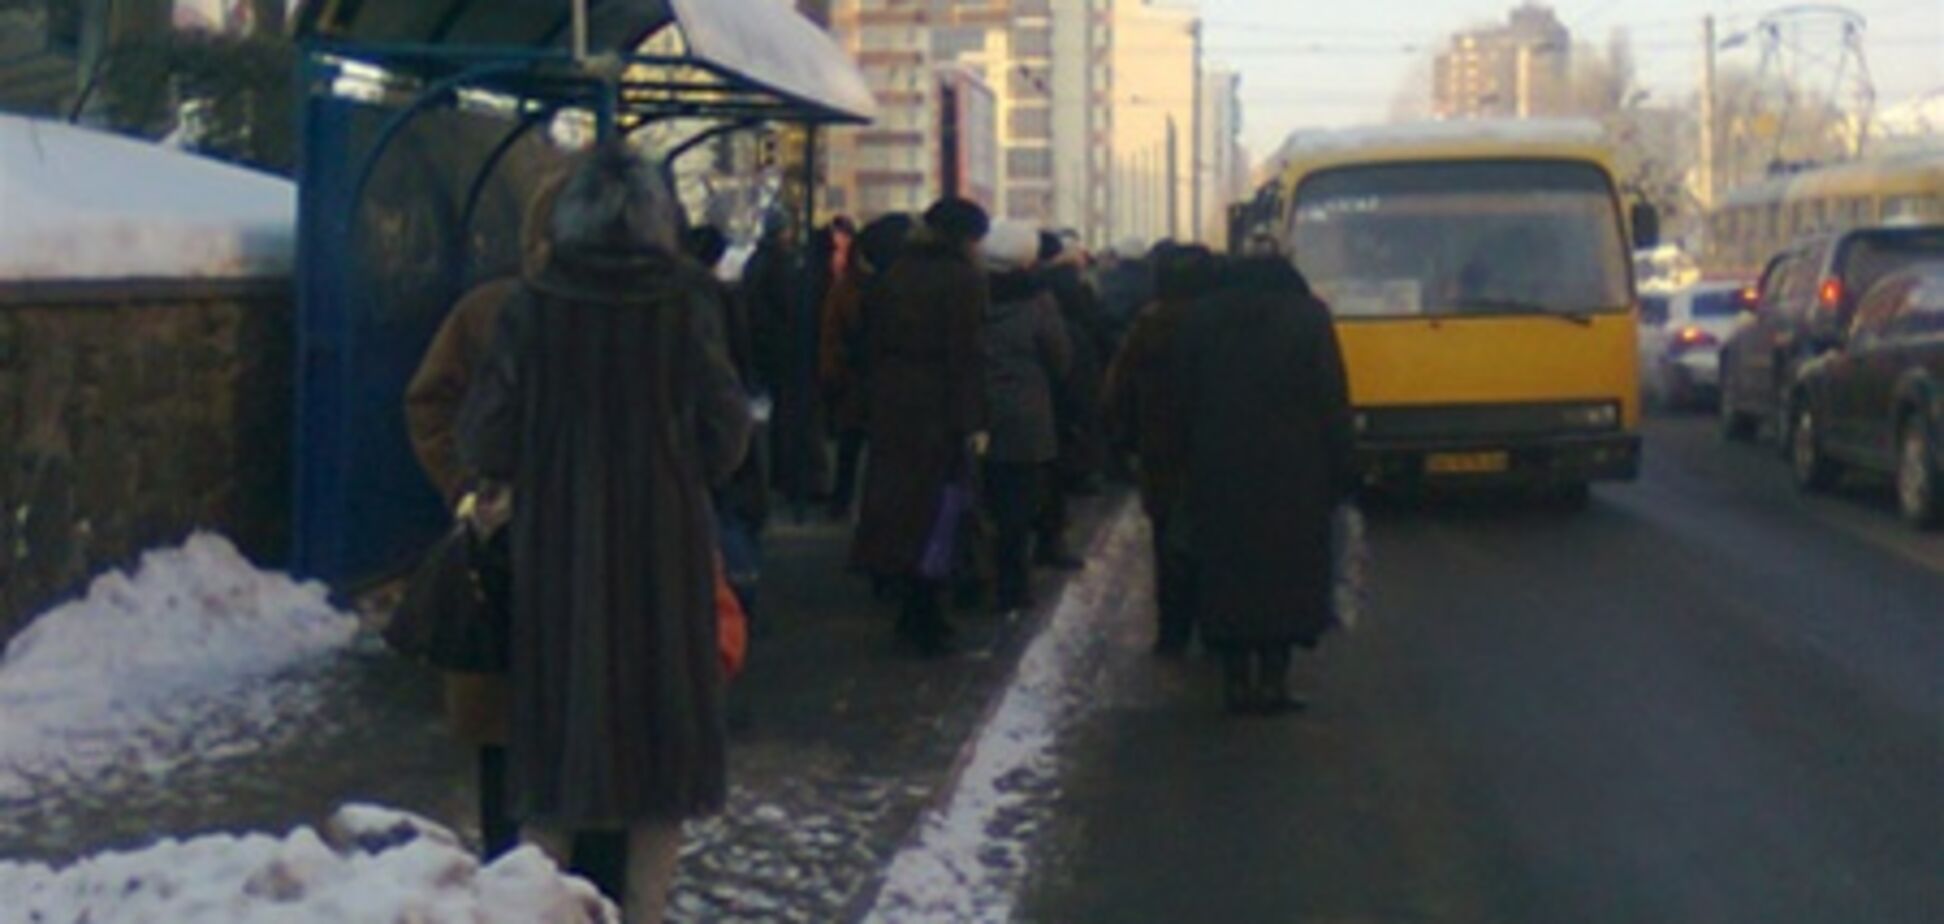 Лютые морозы парализовали Киев. Фото. Видео